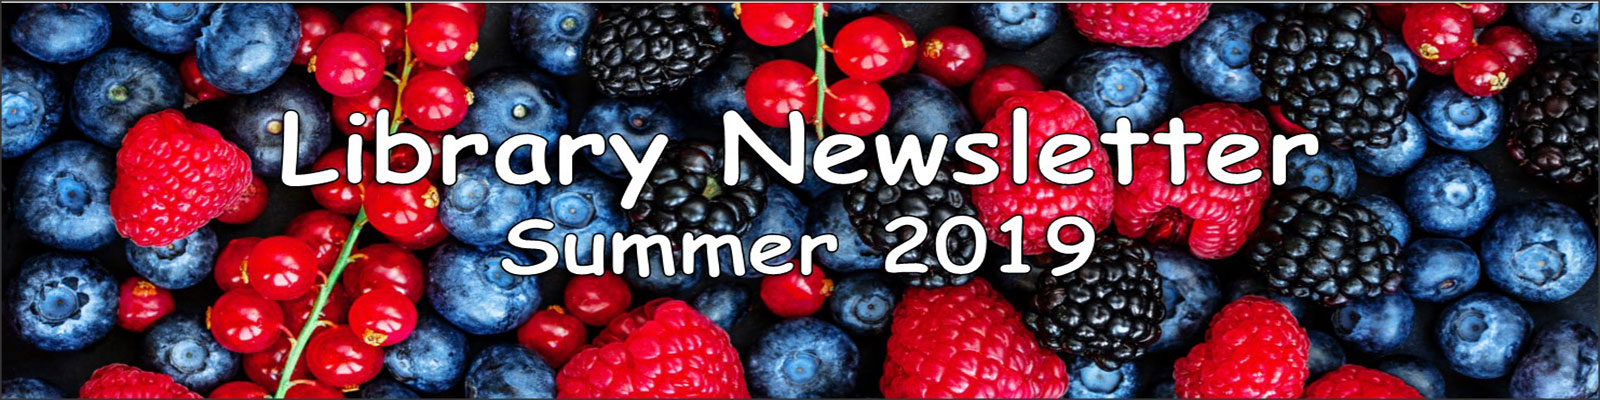 Library Newsletter Summer 2019 Berries Banner  